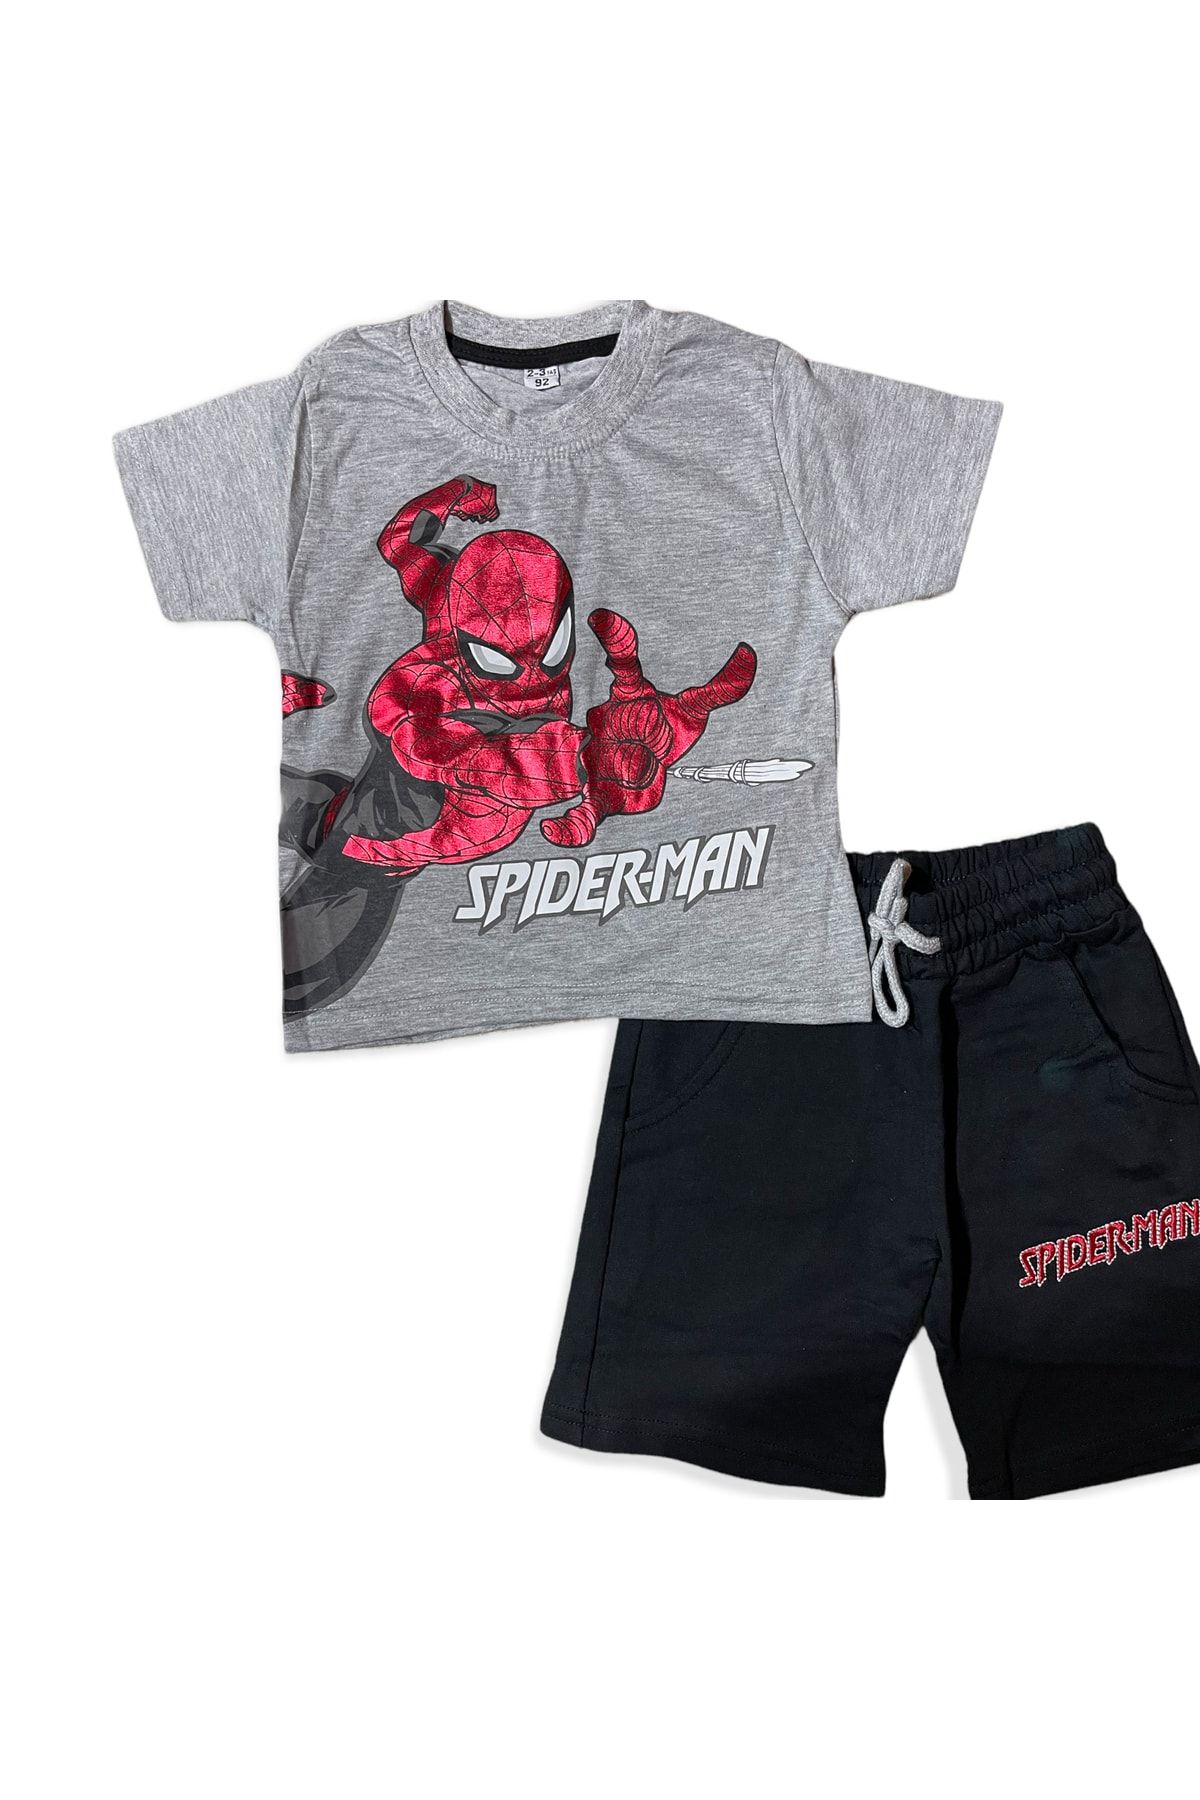 Lolliboomkids Erkek Çocuk Parlak Kırmızı Varak Baskılı Spiderman T-shirt Şort Takım Yeni Sezon Örümcek Adam